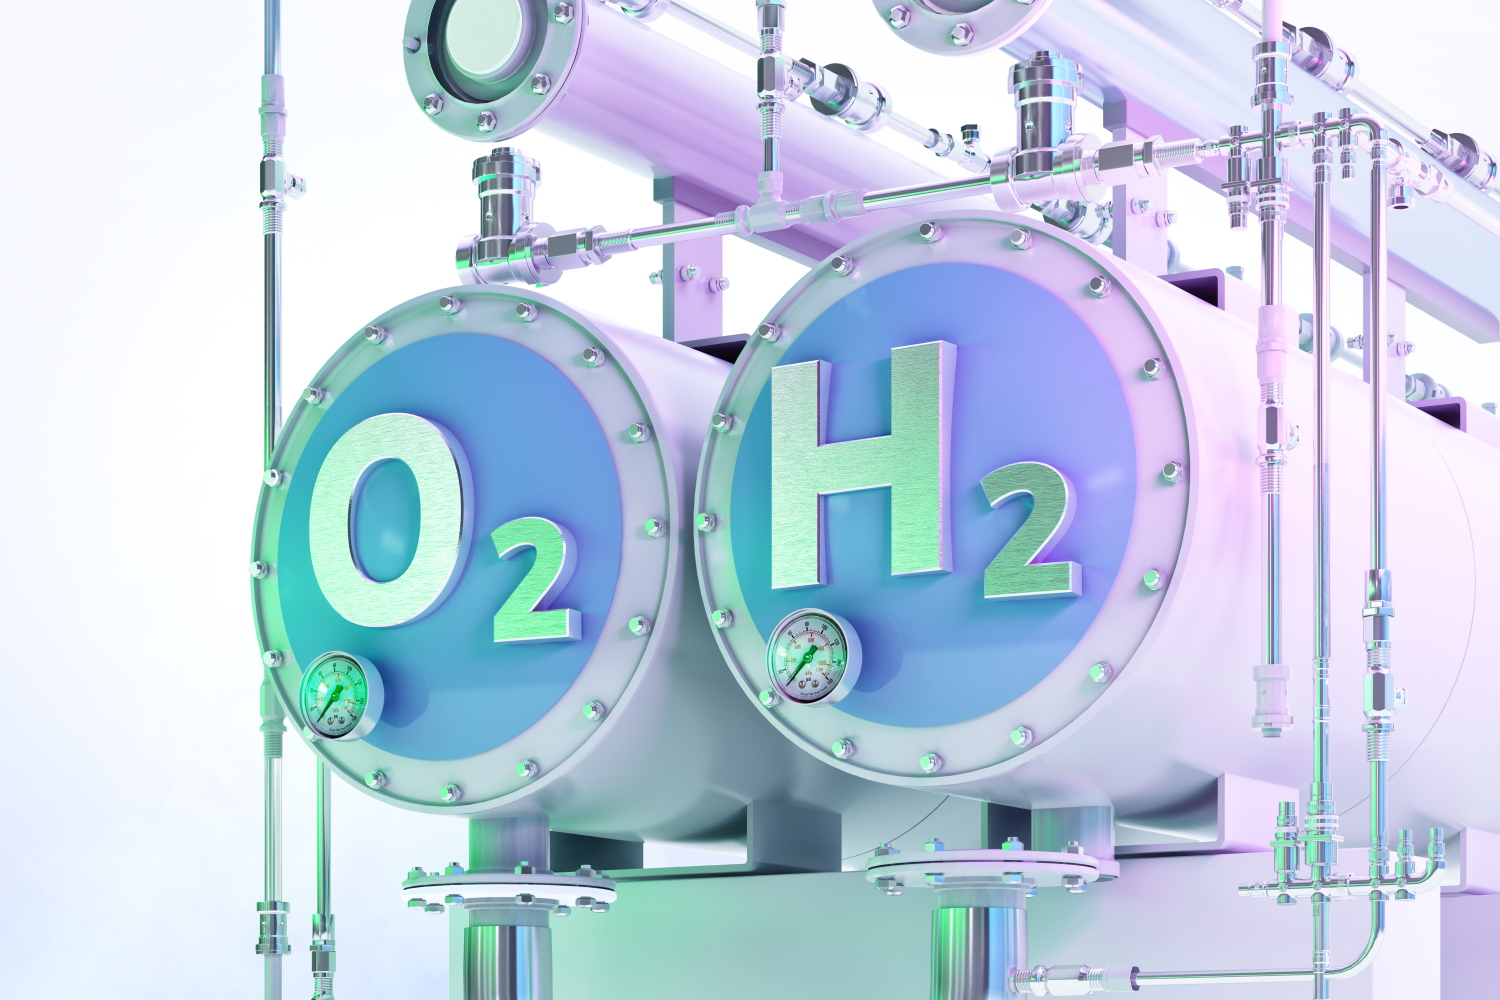 Erzeugung von grünem Wasserstoff durch Elektrolyse mit Strom aus erneuerbaren Energiequellen, auf der Anlage sind die chemischen Formeln für Sauerstoff und Wasserstoff zu sehen.